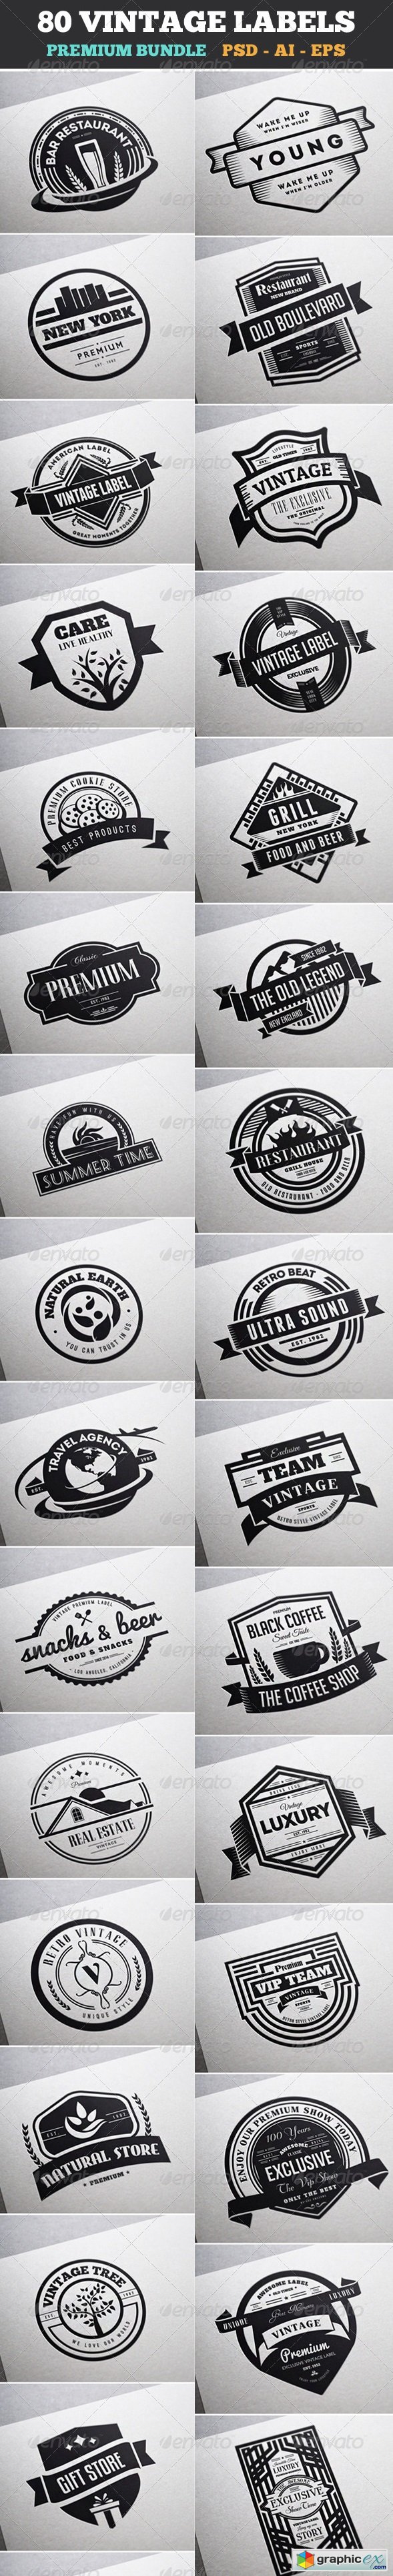 80 Vintage Labels & Badges Logos Bundle